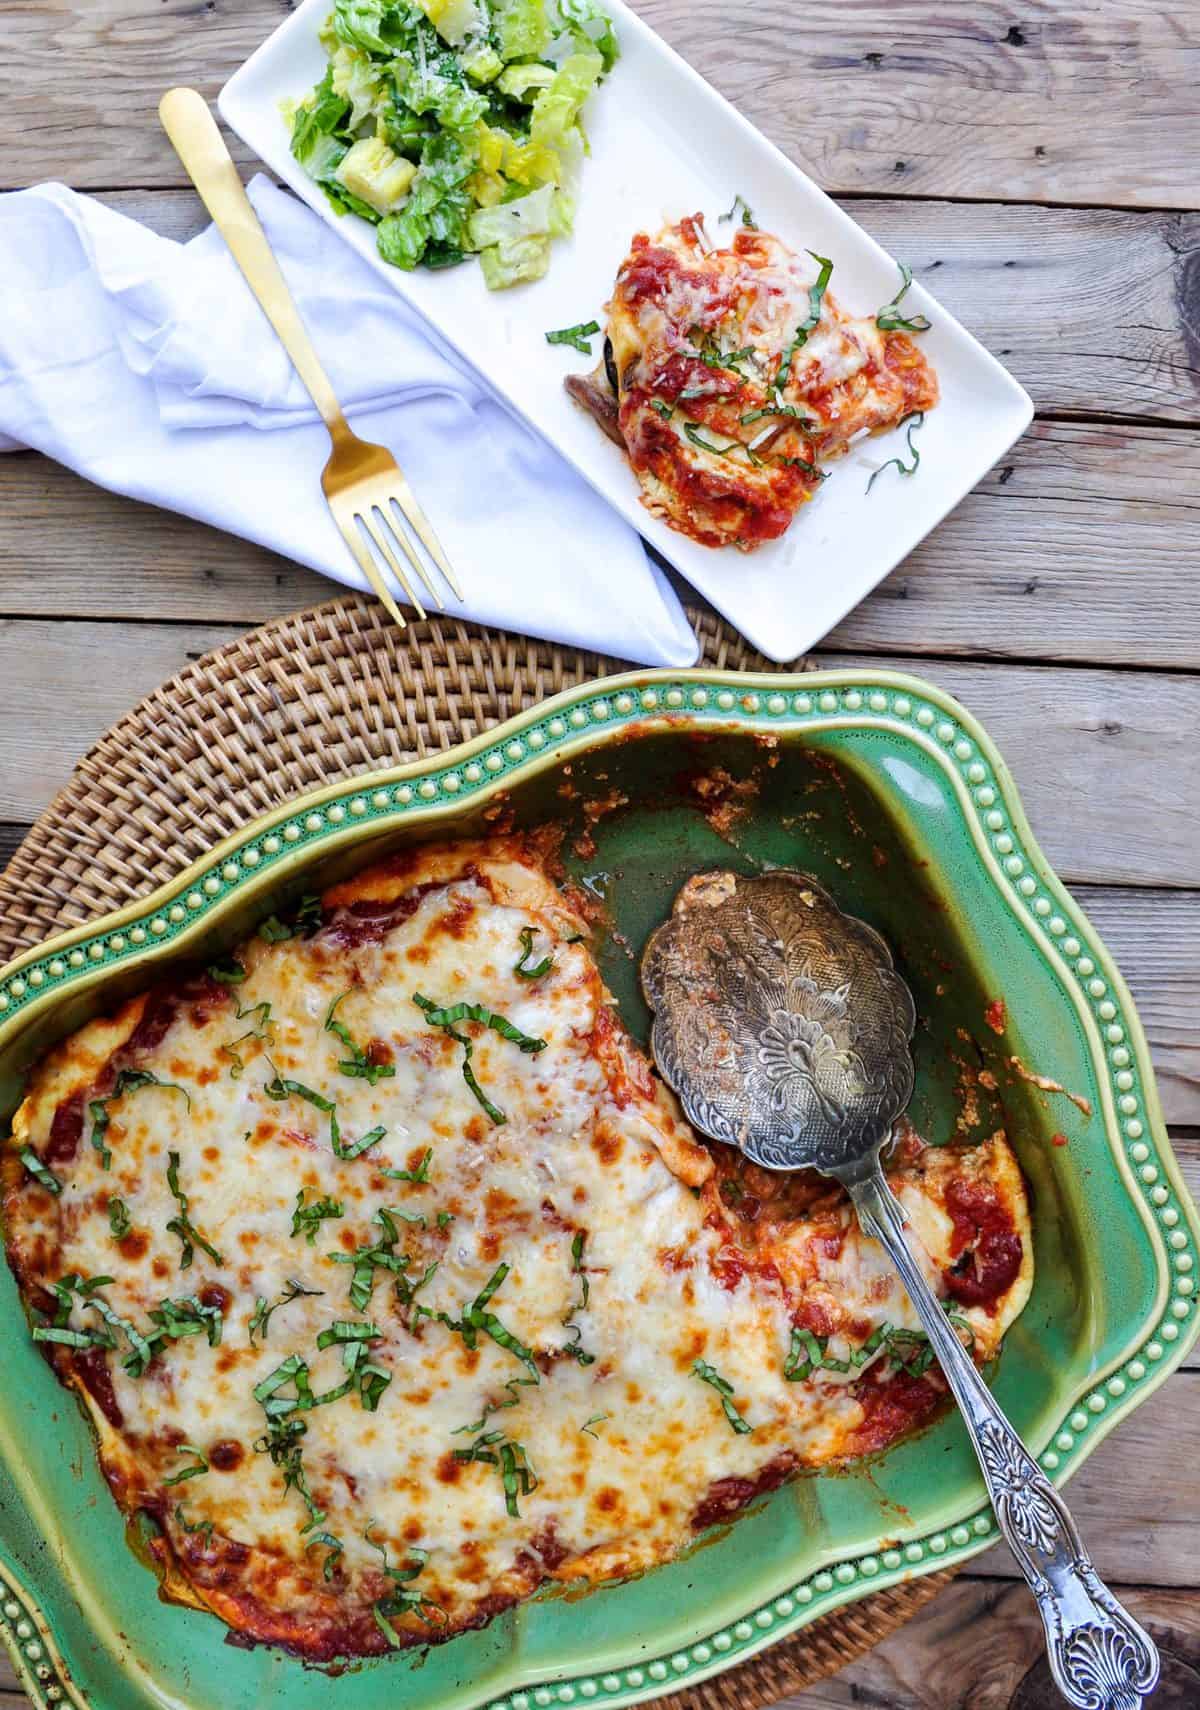 Fresh Veggie Lasagna using Zucchini and Mushrooms